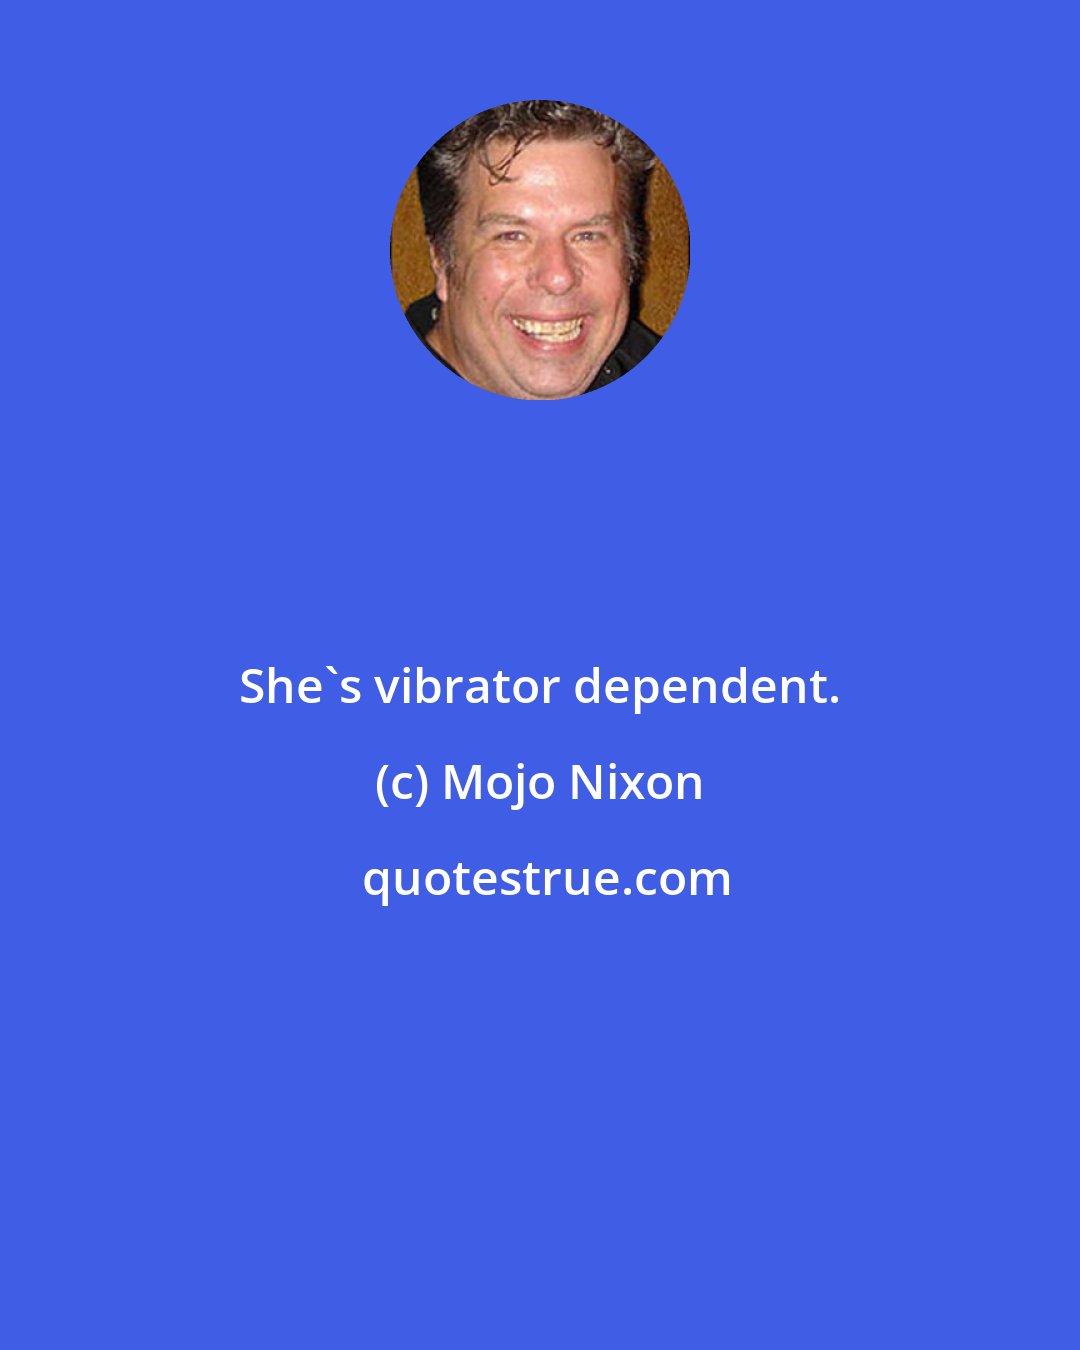 Mojo Nixon: She's vibrator dependent.